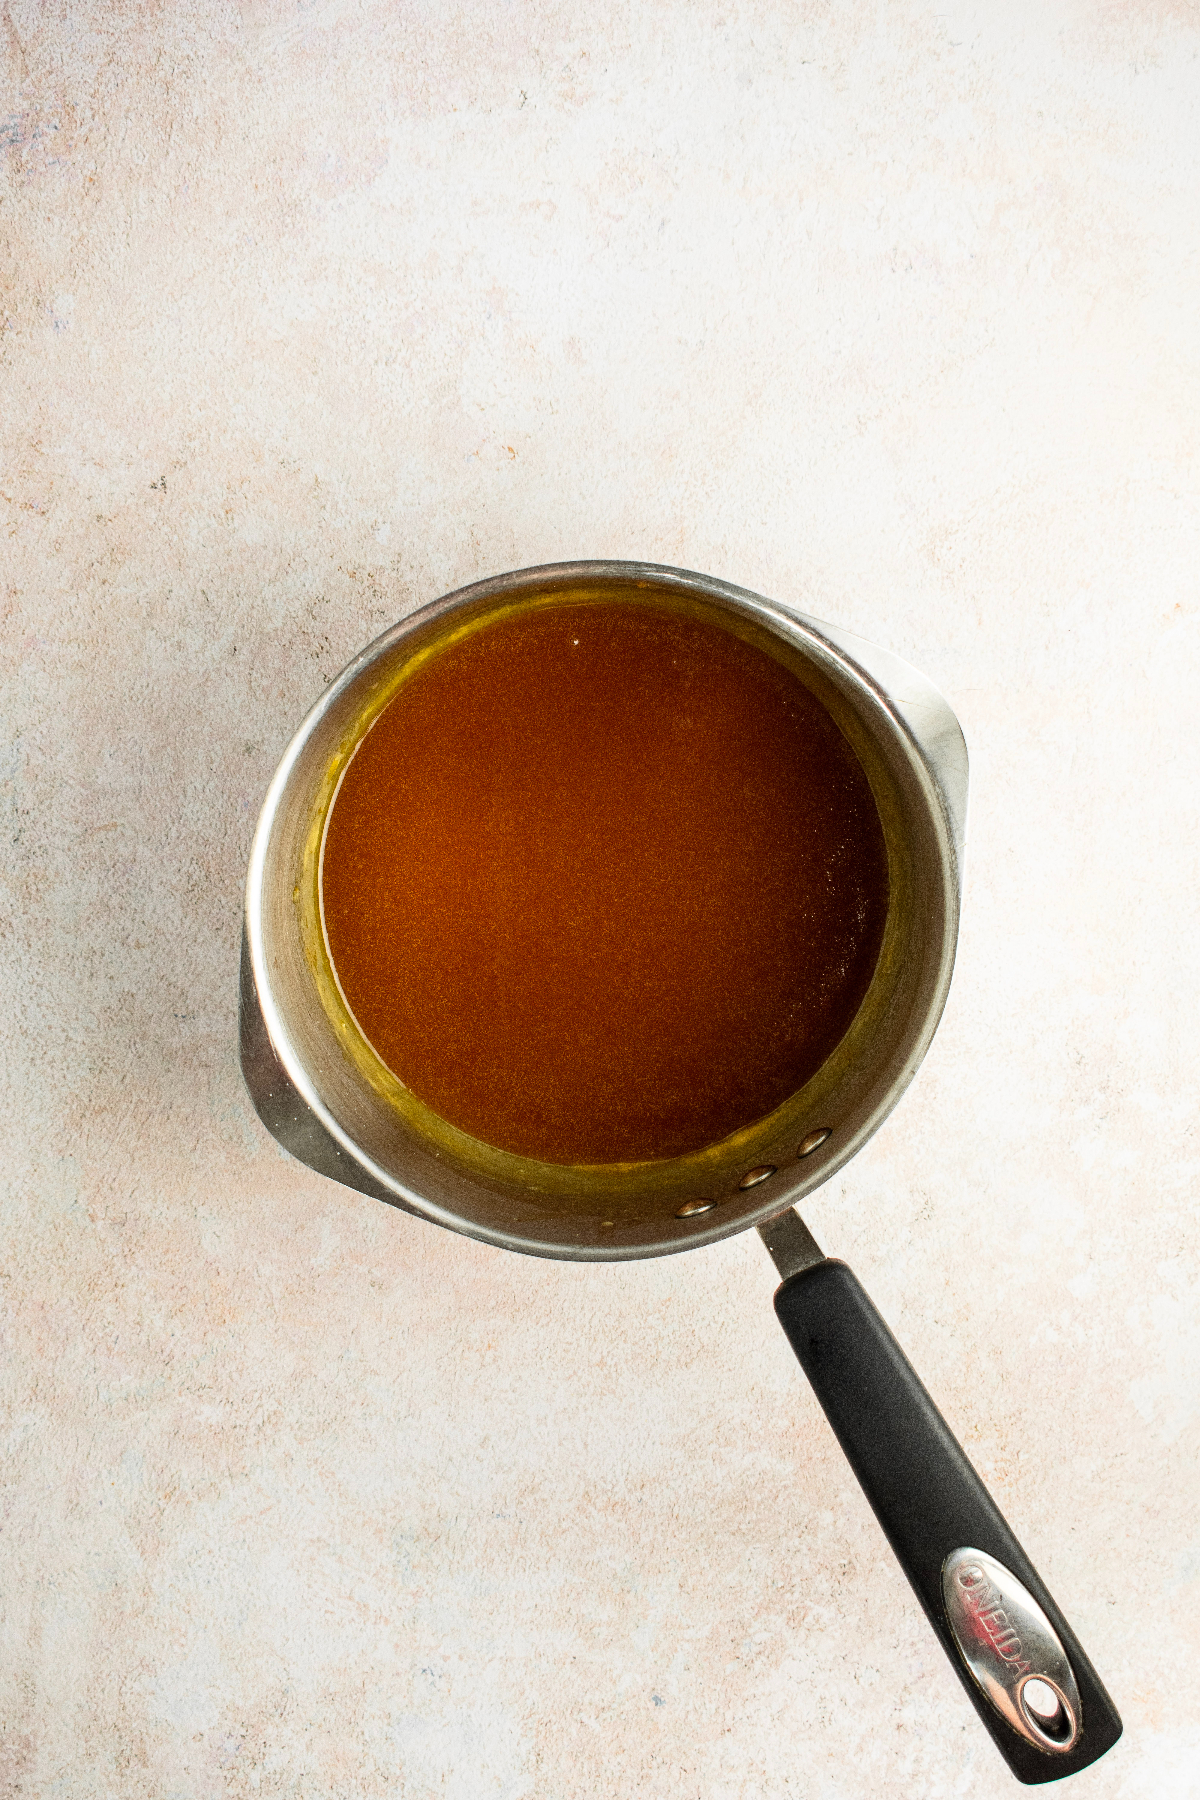 Freshly made warm caramel sauce in a metal pan.